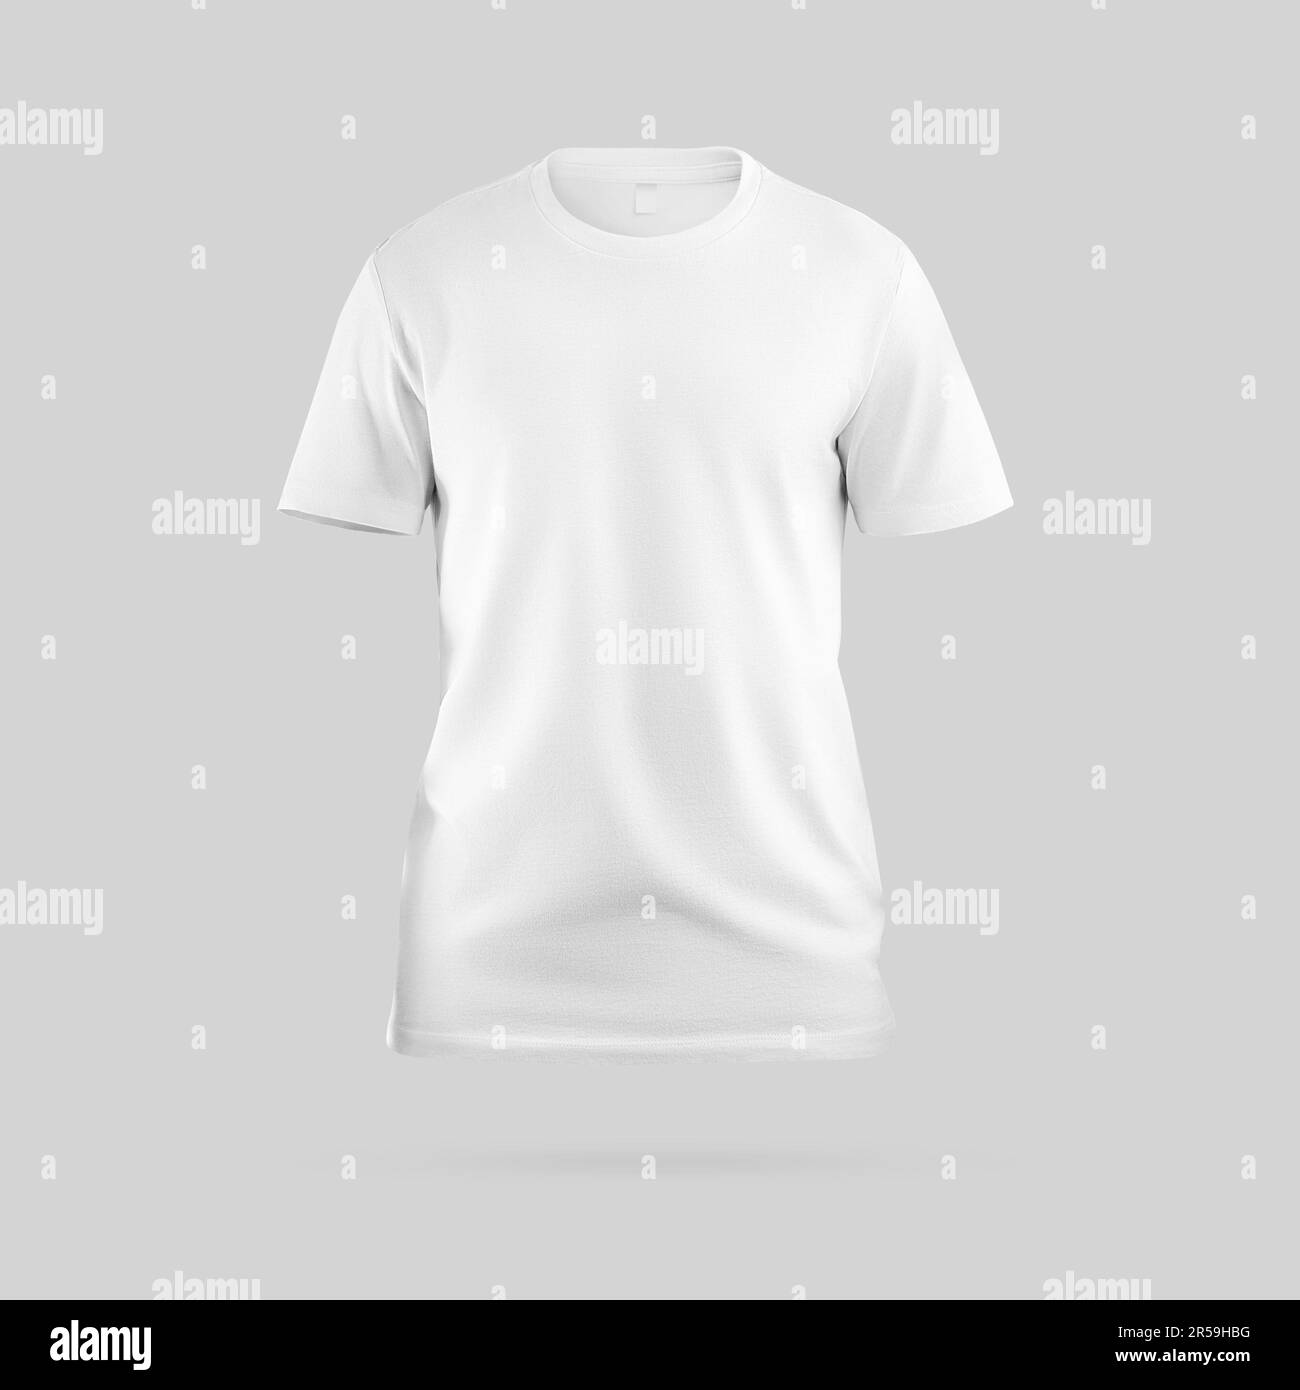 Camiseta blanca maqueta representación 3D, camisa de moda con etiqueta,  aislado en el fondo, vista frontal. Plantilla de ropa masculina con estilo, para  diseño, impresión, adv Fotografía de stock - Alamy